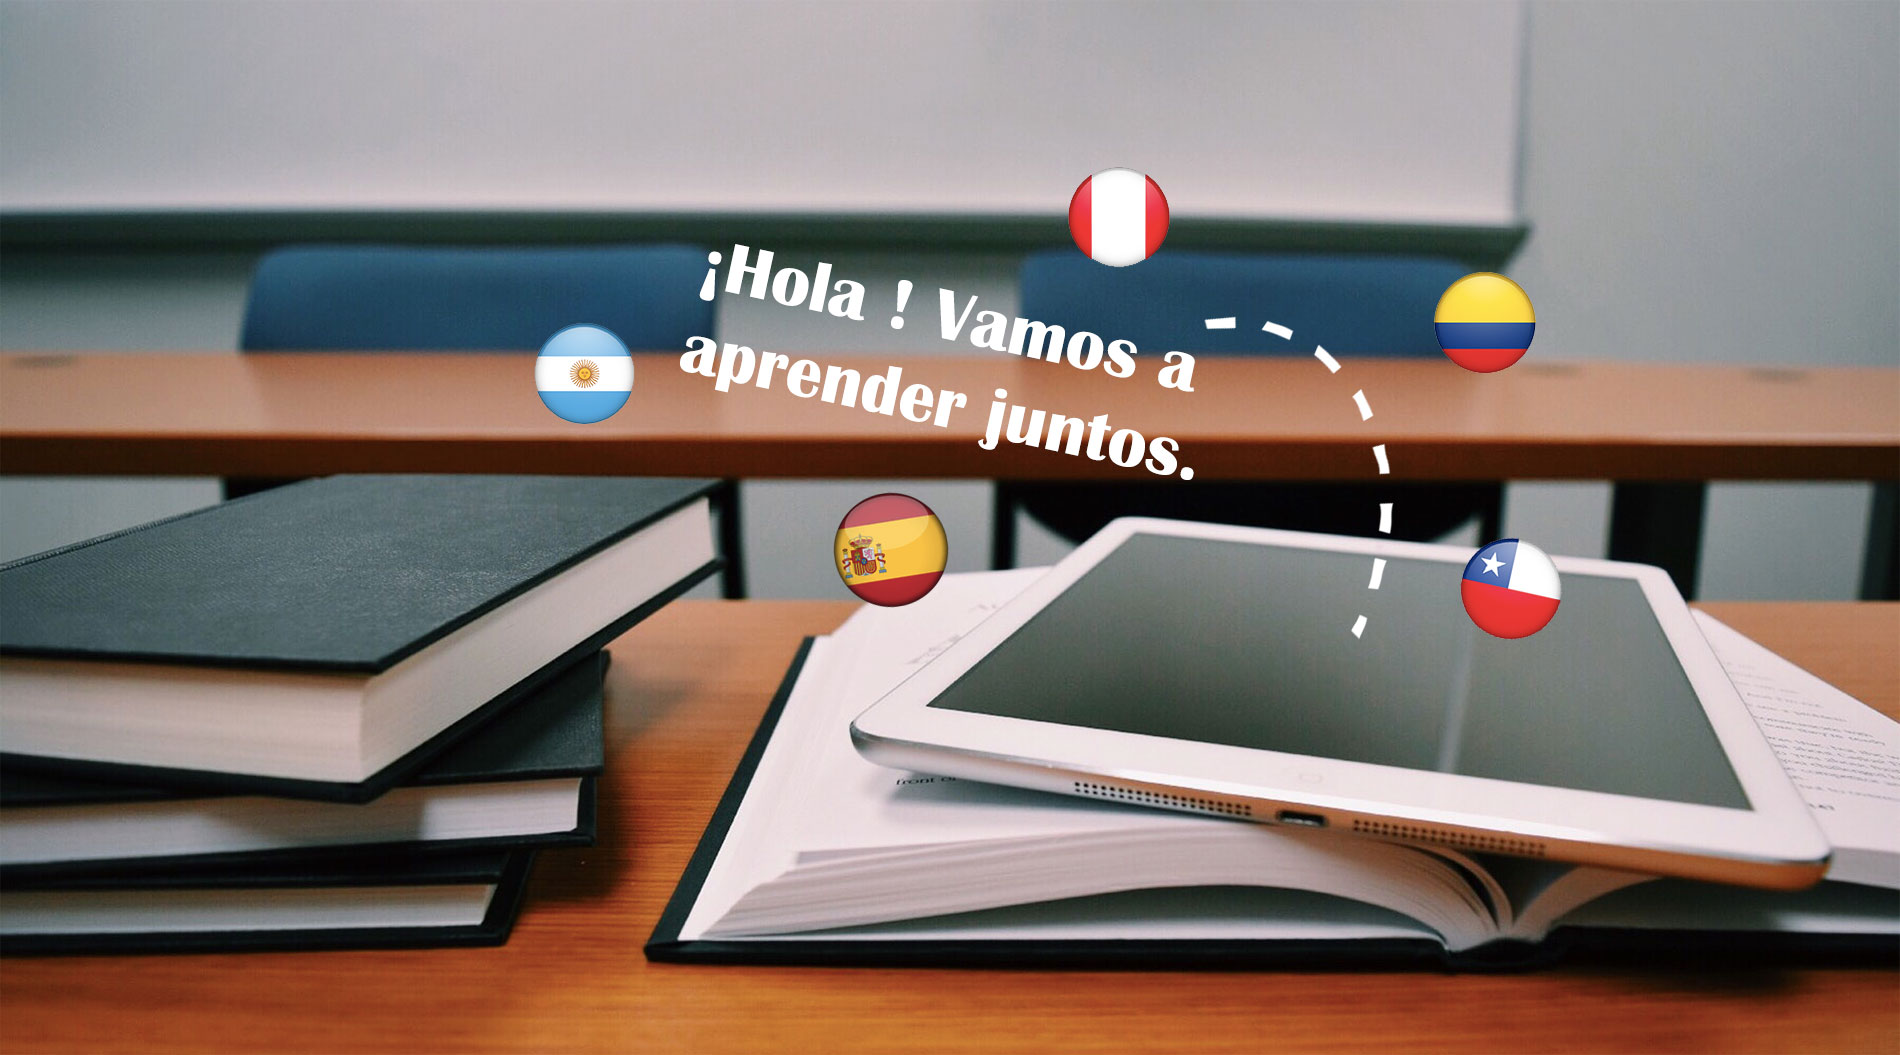 Embauche de travailleurs étrangers : l’importance d’apprendre l’espagnol pour les employeurs